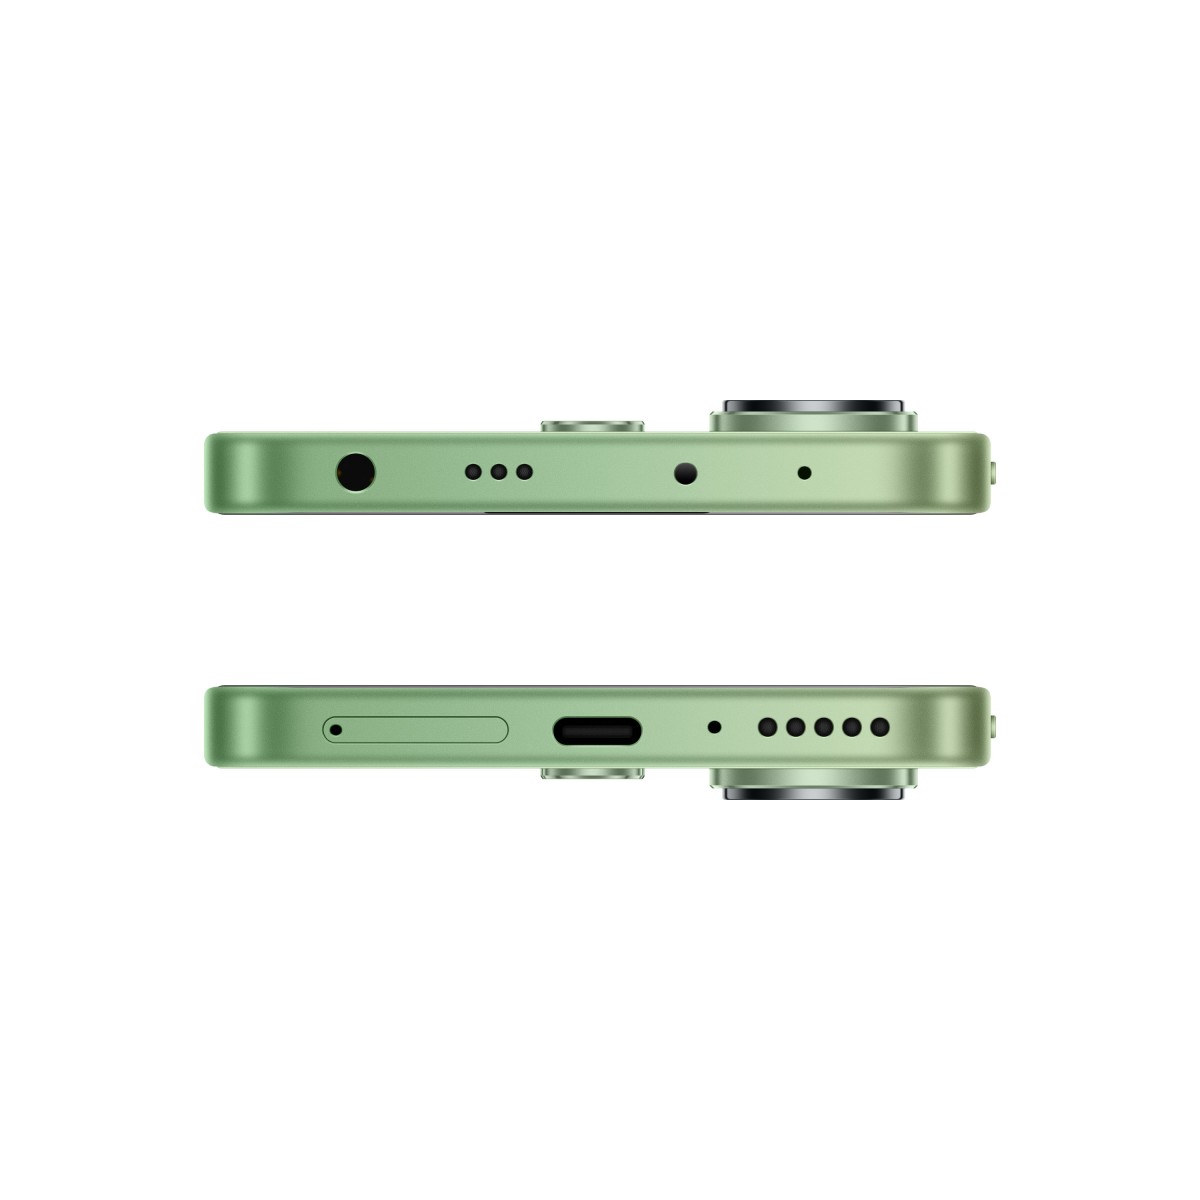 جوال شاومي ريدمي نوت 13 4G ثنائي الشريحة ذاكرة 256 جيجا مع رام 8 جيجا النسخة العالمية - اللون الأخضر